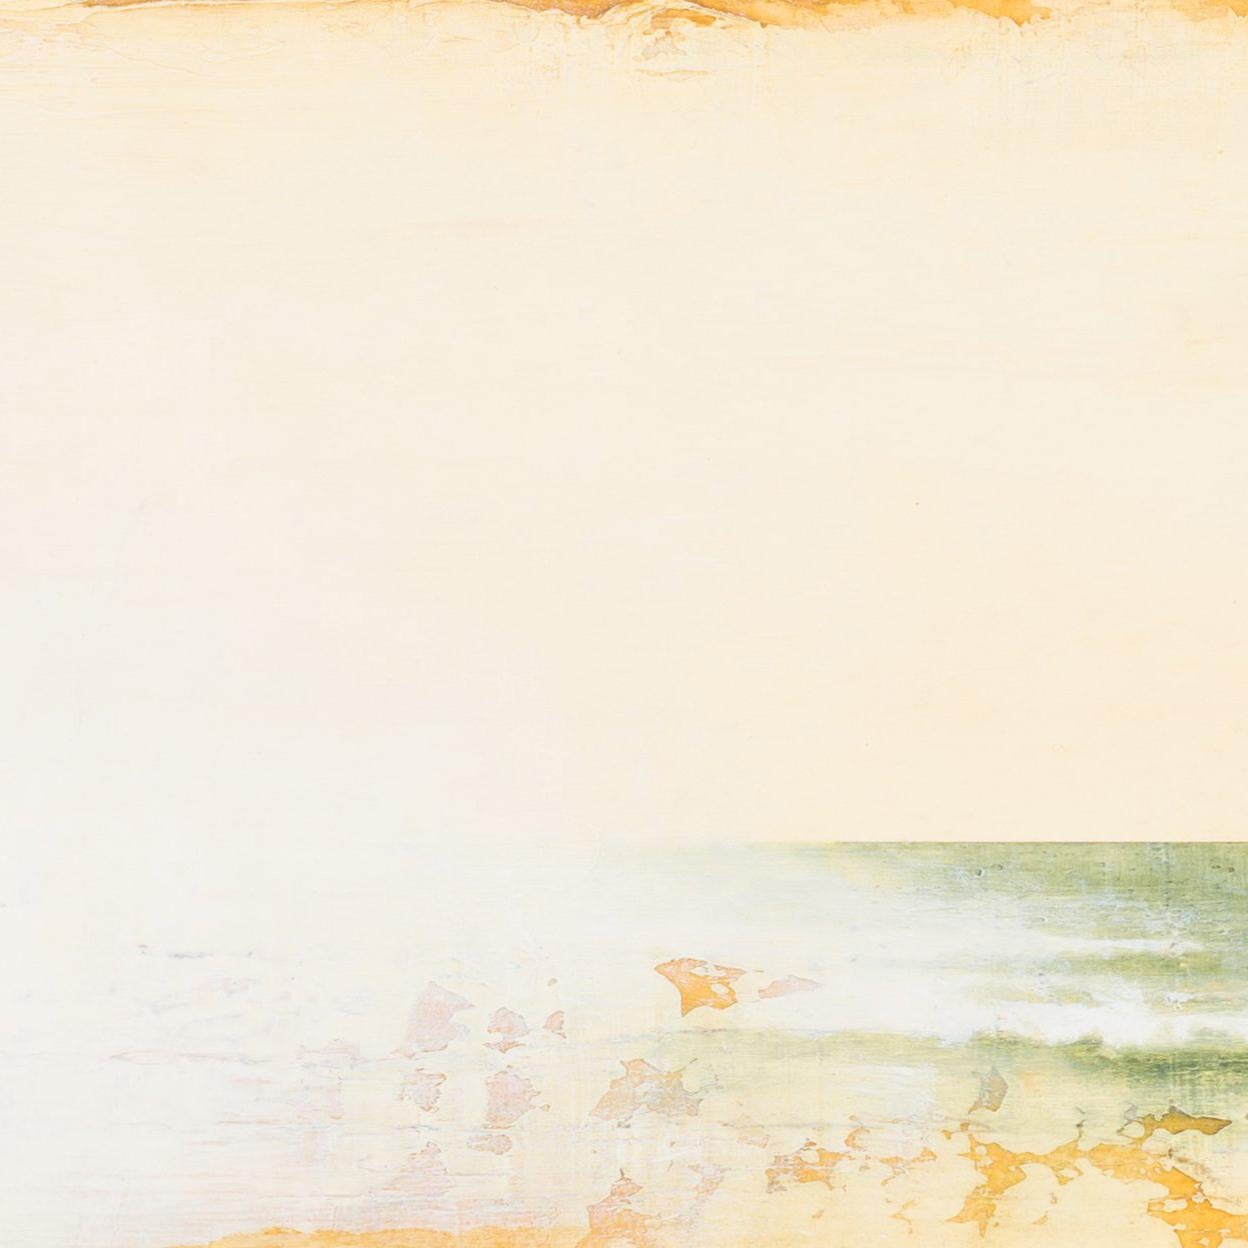 techniques mixtes sur papier ; non encadré 

feuille entière 22.5 x 30.25 pouces 

signé, daté et intitulé en bas à droite

Le peintre néoromantique Hiro Yokose fusionne de multiples couches de cire et de peinture à l'huile pour créer des paysages